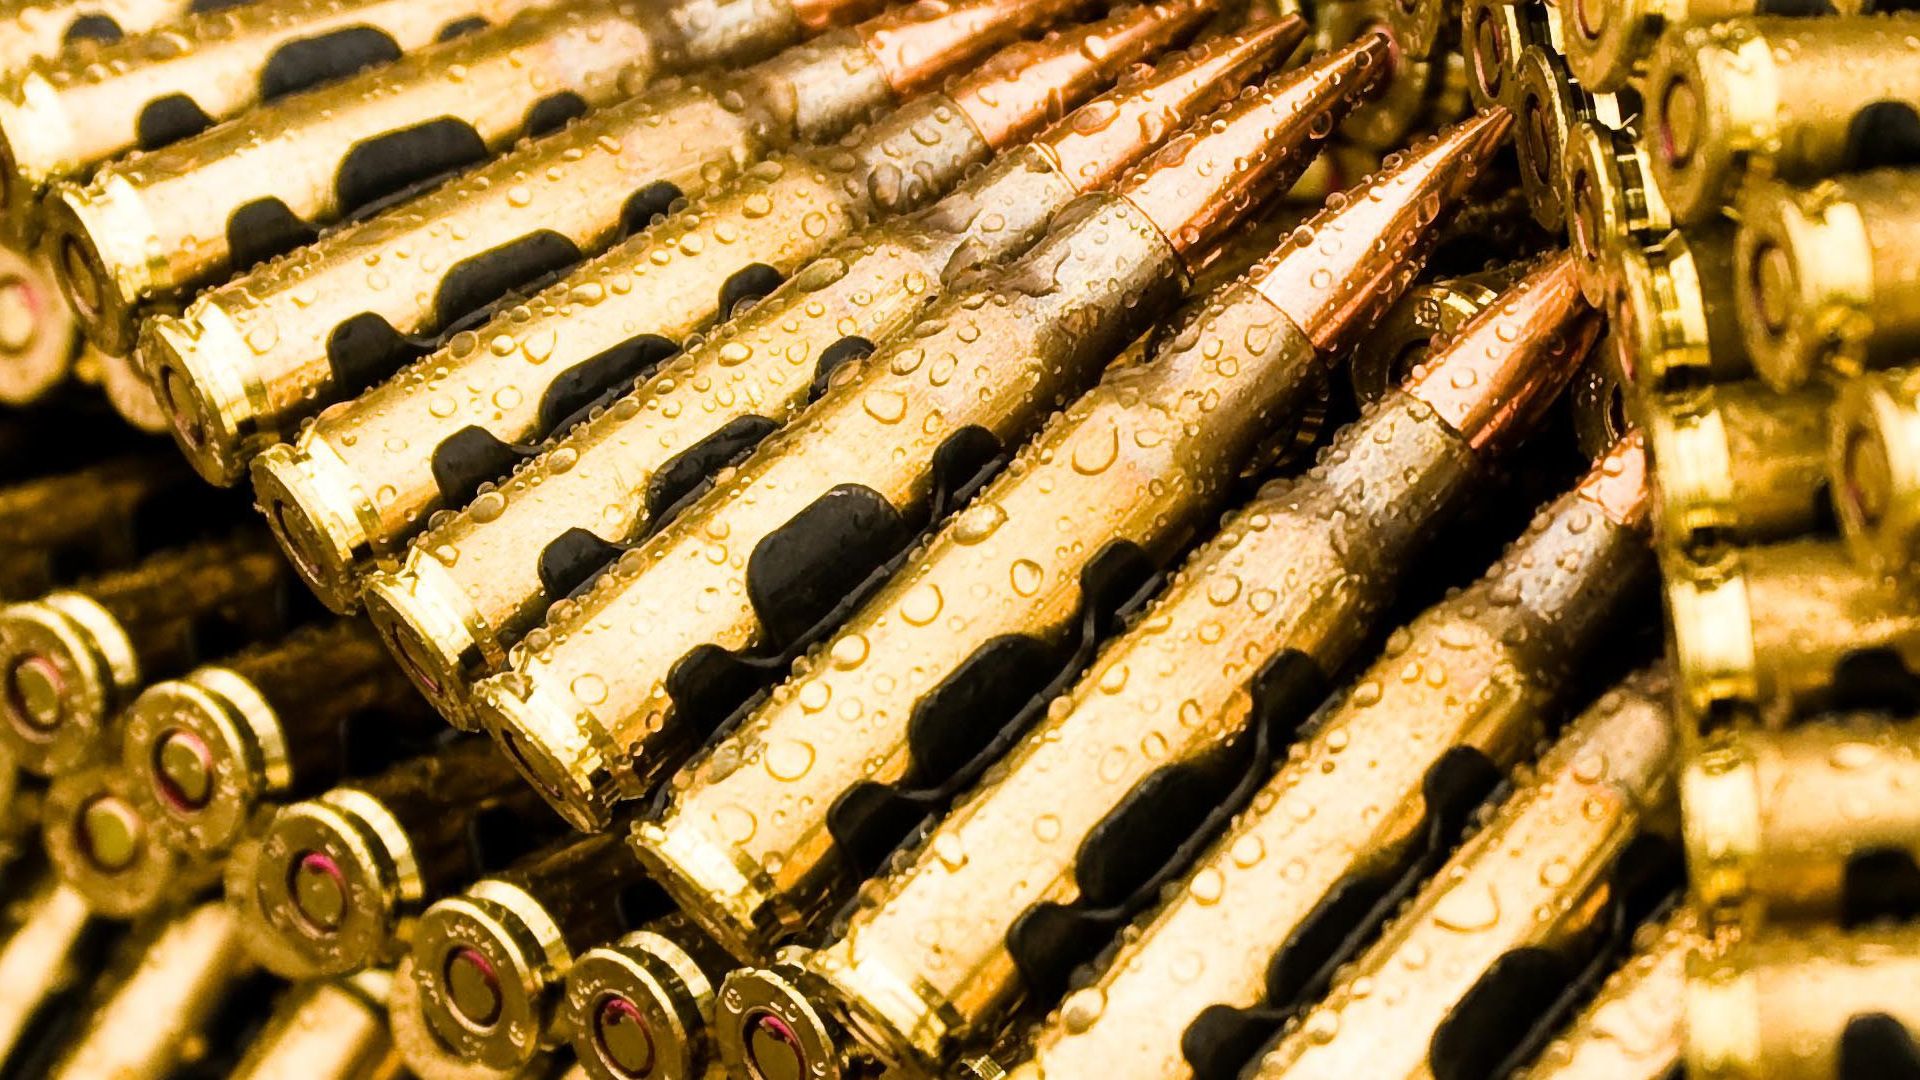 HD Ammunition Bullet Wallpaper